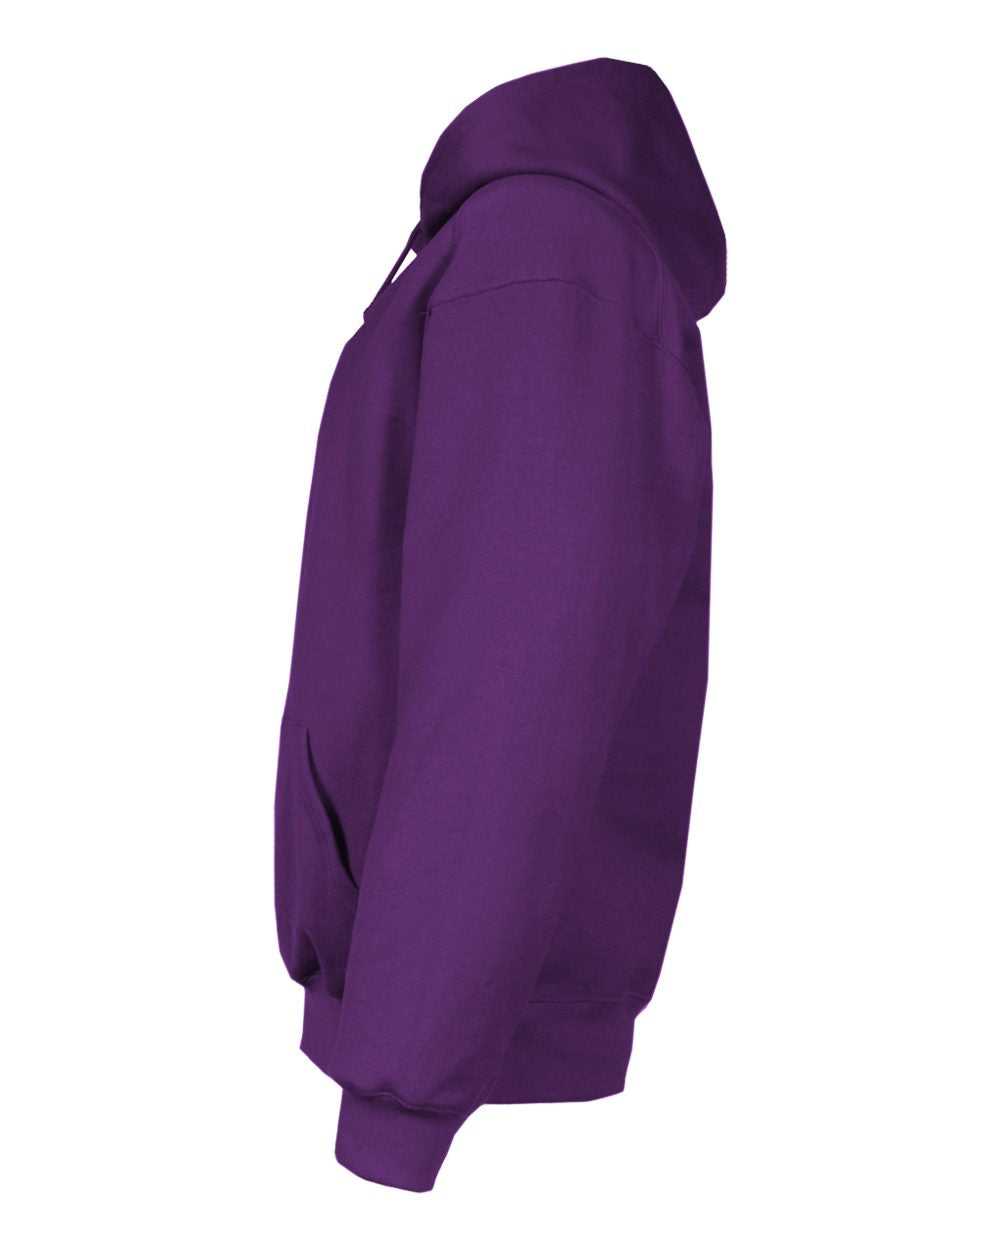 Badger Sport 1254 Hooded Sweatshirt - Purple - HIT a Double - 2